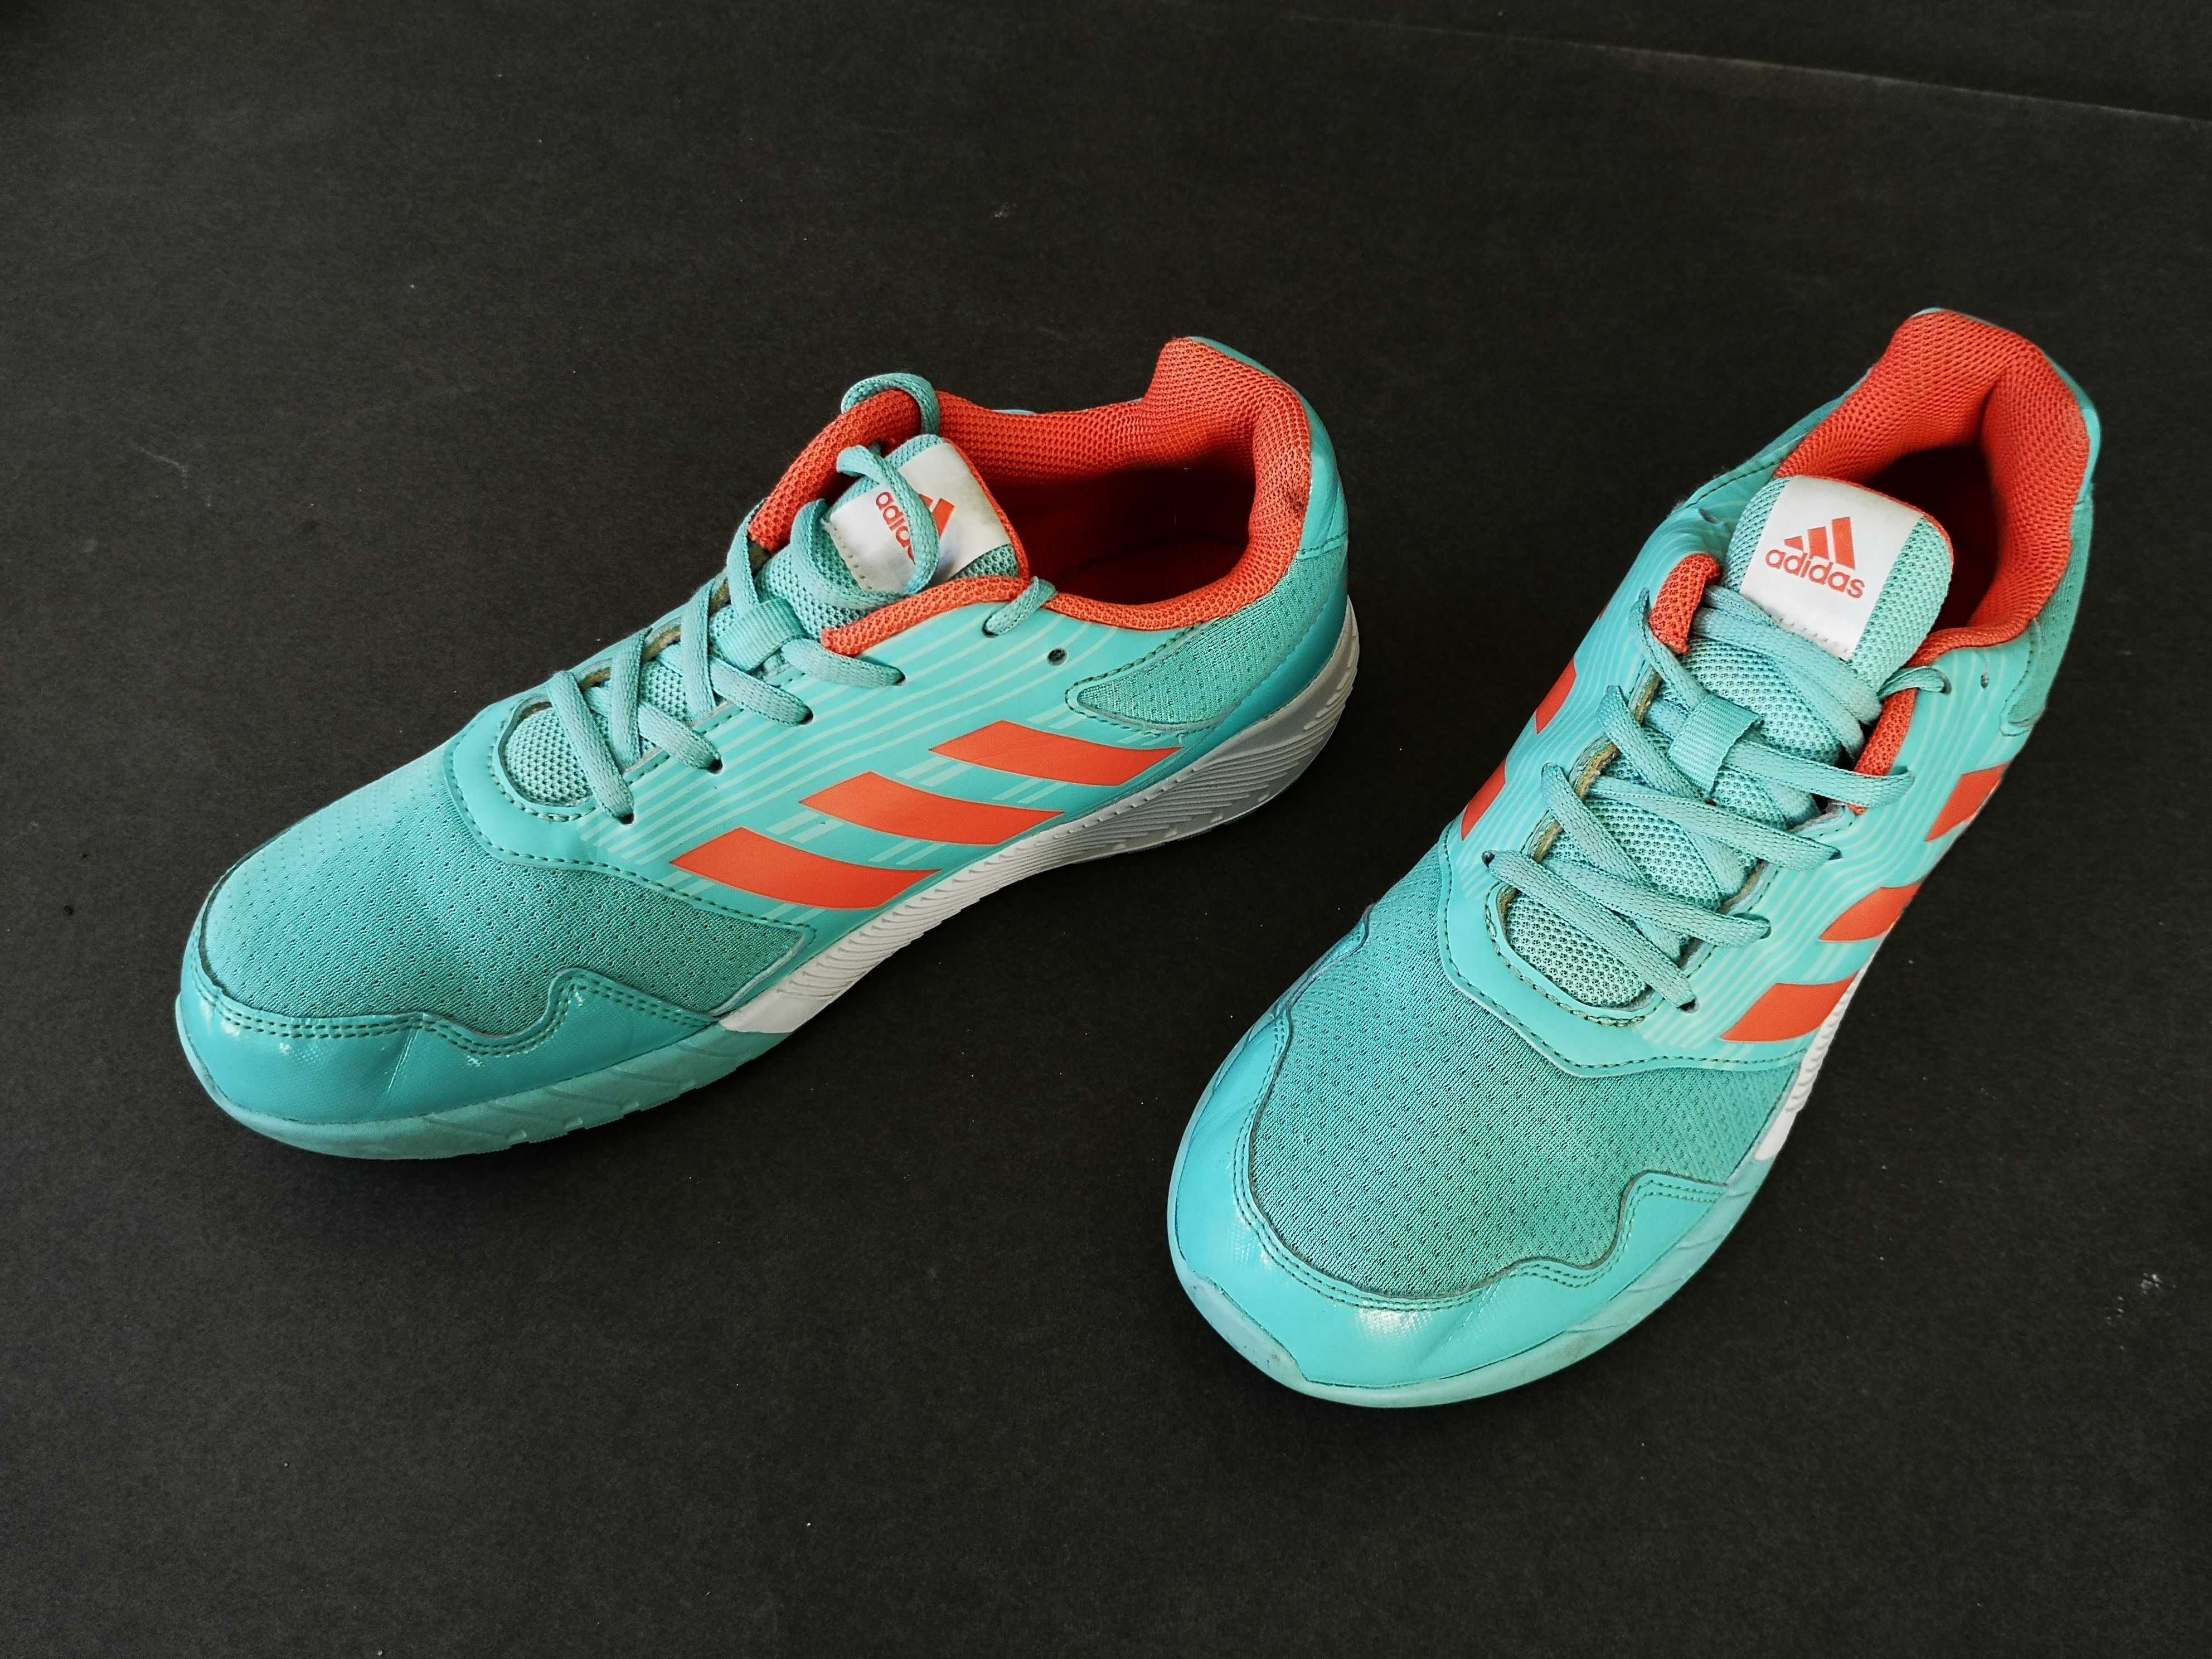 Adidasi alergare ghete  dama copii  39 40 ADIDAS Impecabili